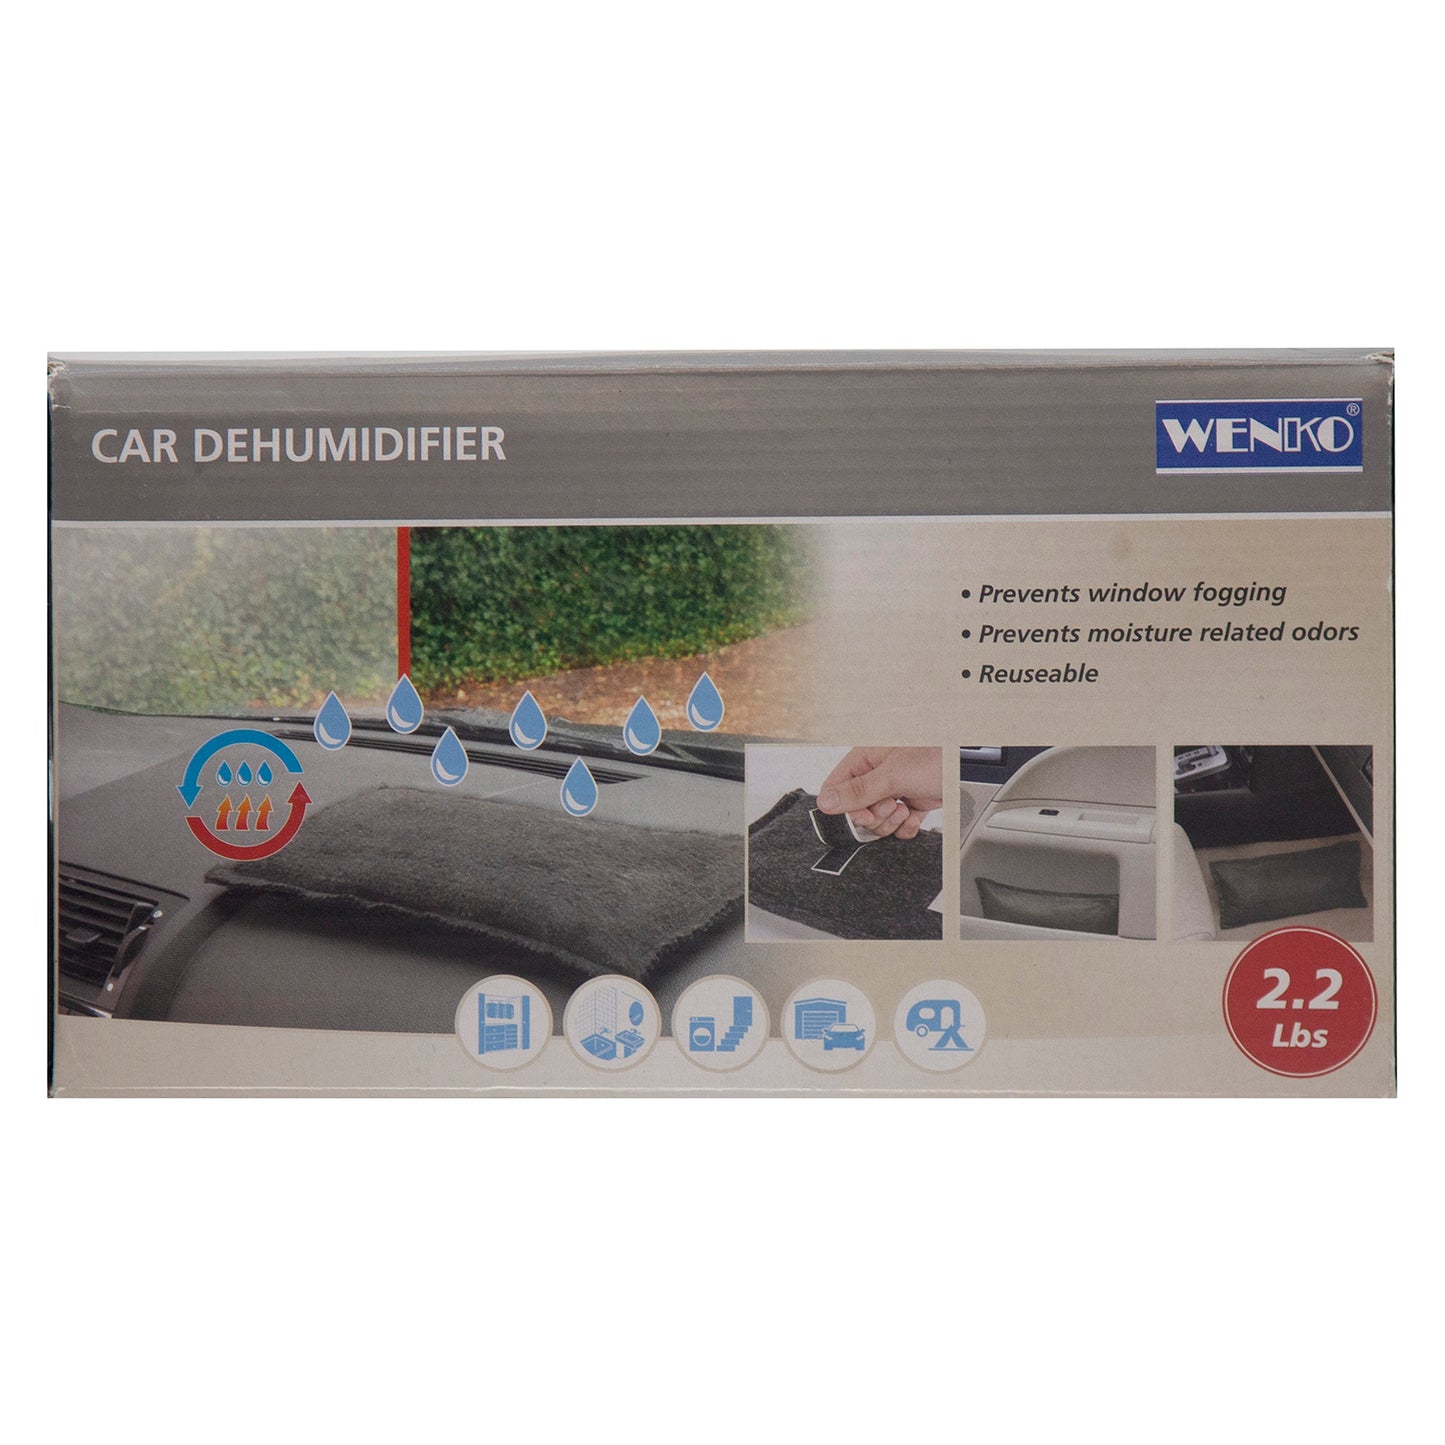 Wenko Car Dehumidifier 2.2 lbs "Grade A"